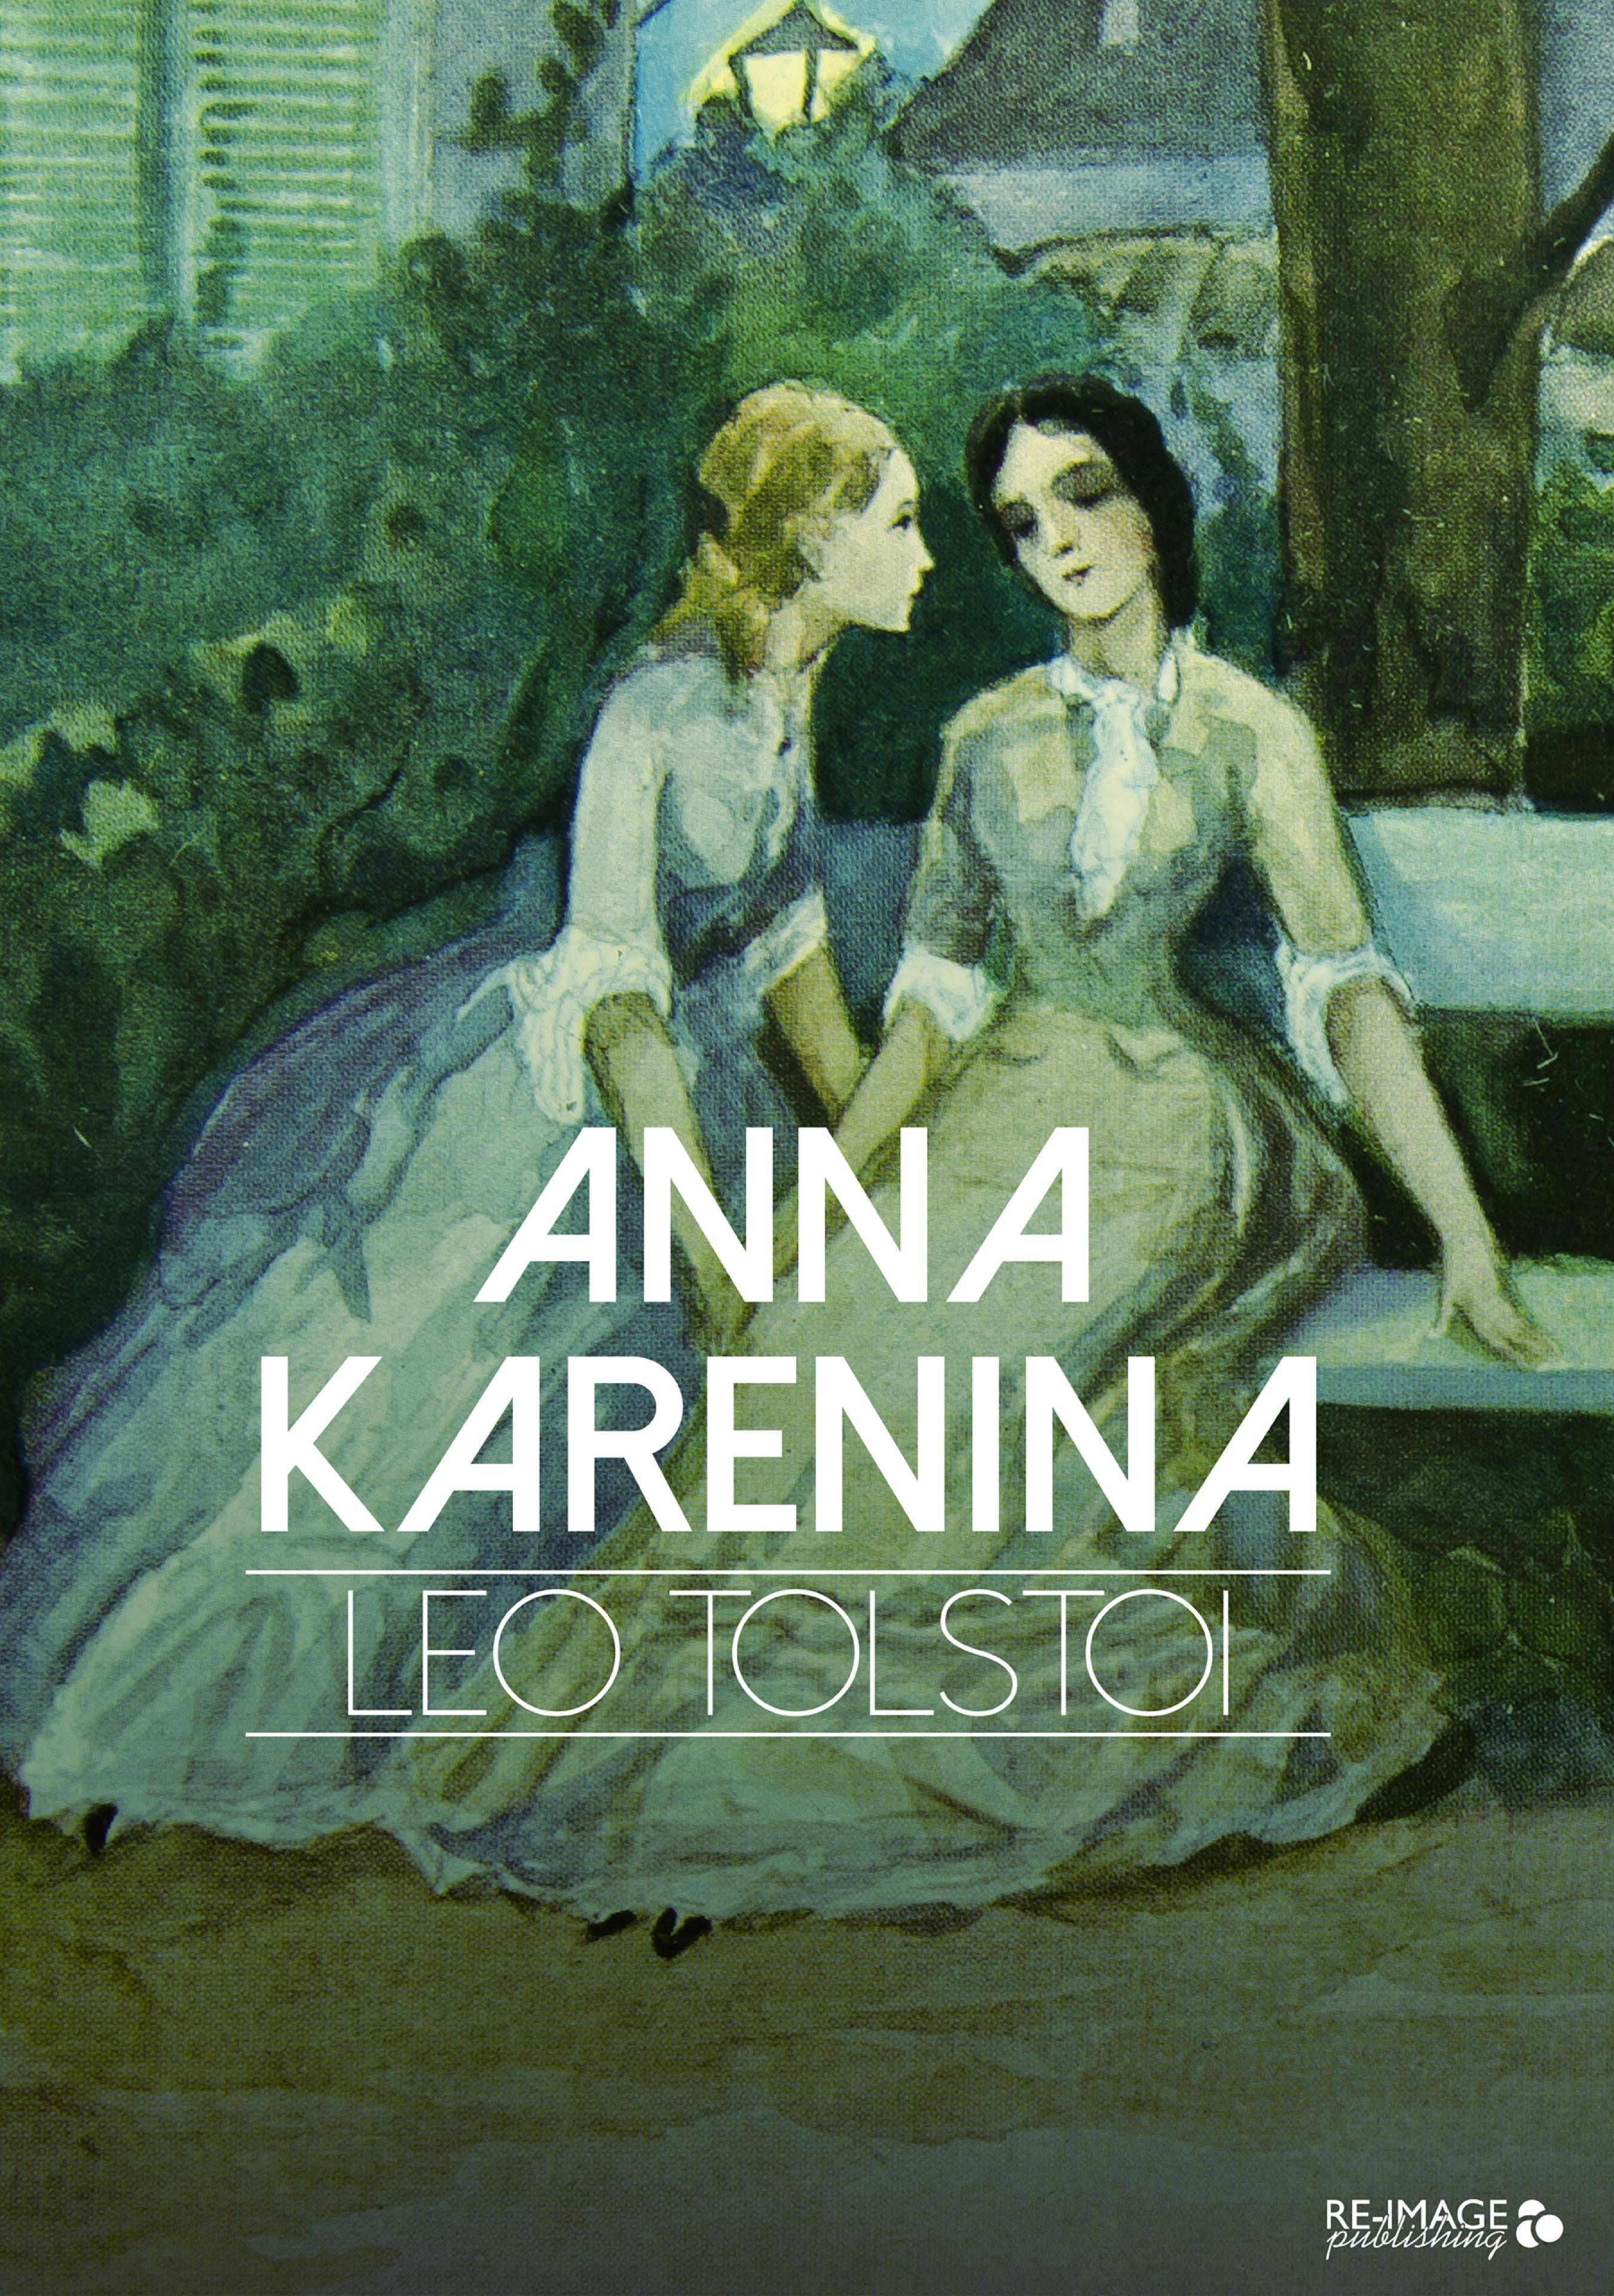 Читать книги анны ковалевой. Tolstoi Leon "Anna Karenine". Три Анны книга.